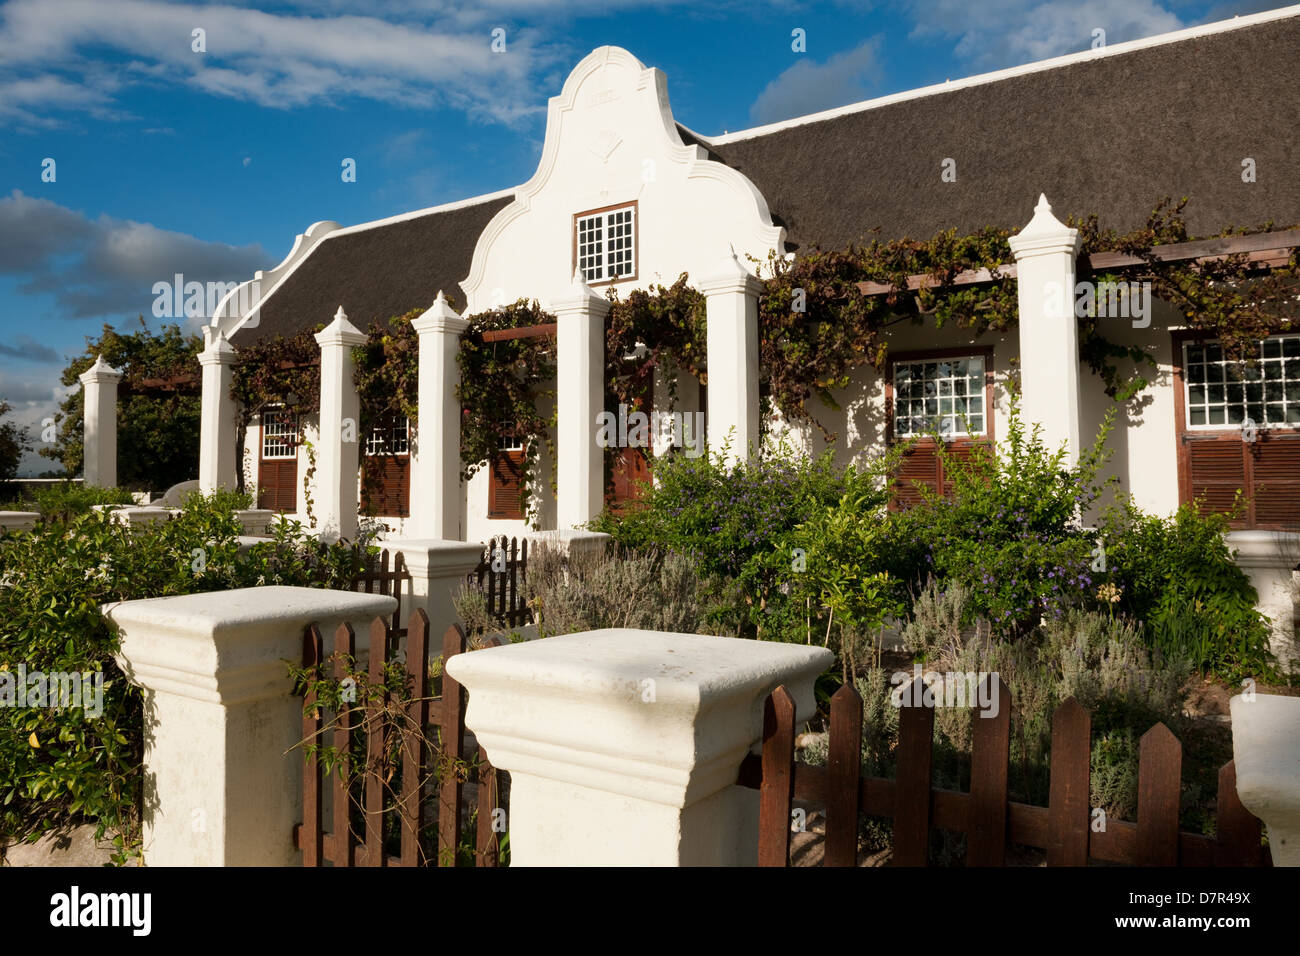 Cape Dutch Manor House, Meerlust Wine Estate, près de Stellenbosch, Afrique du Sud Banque D'Images